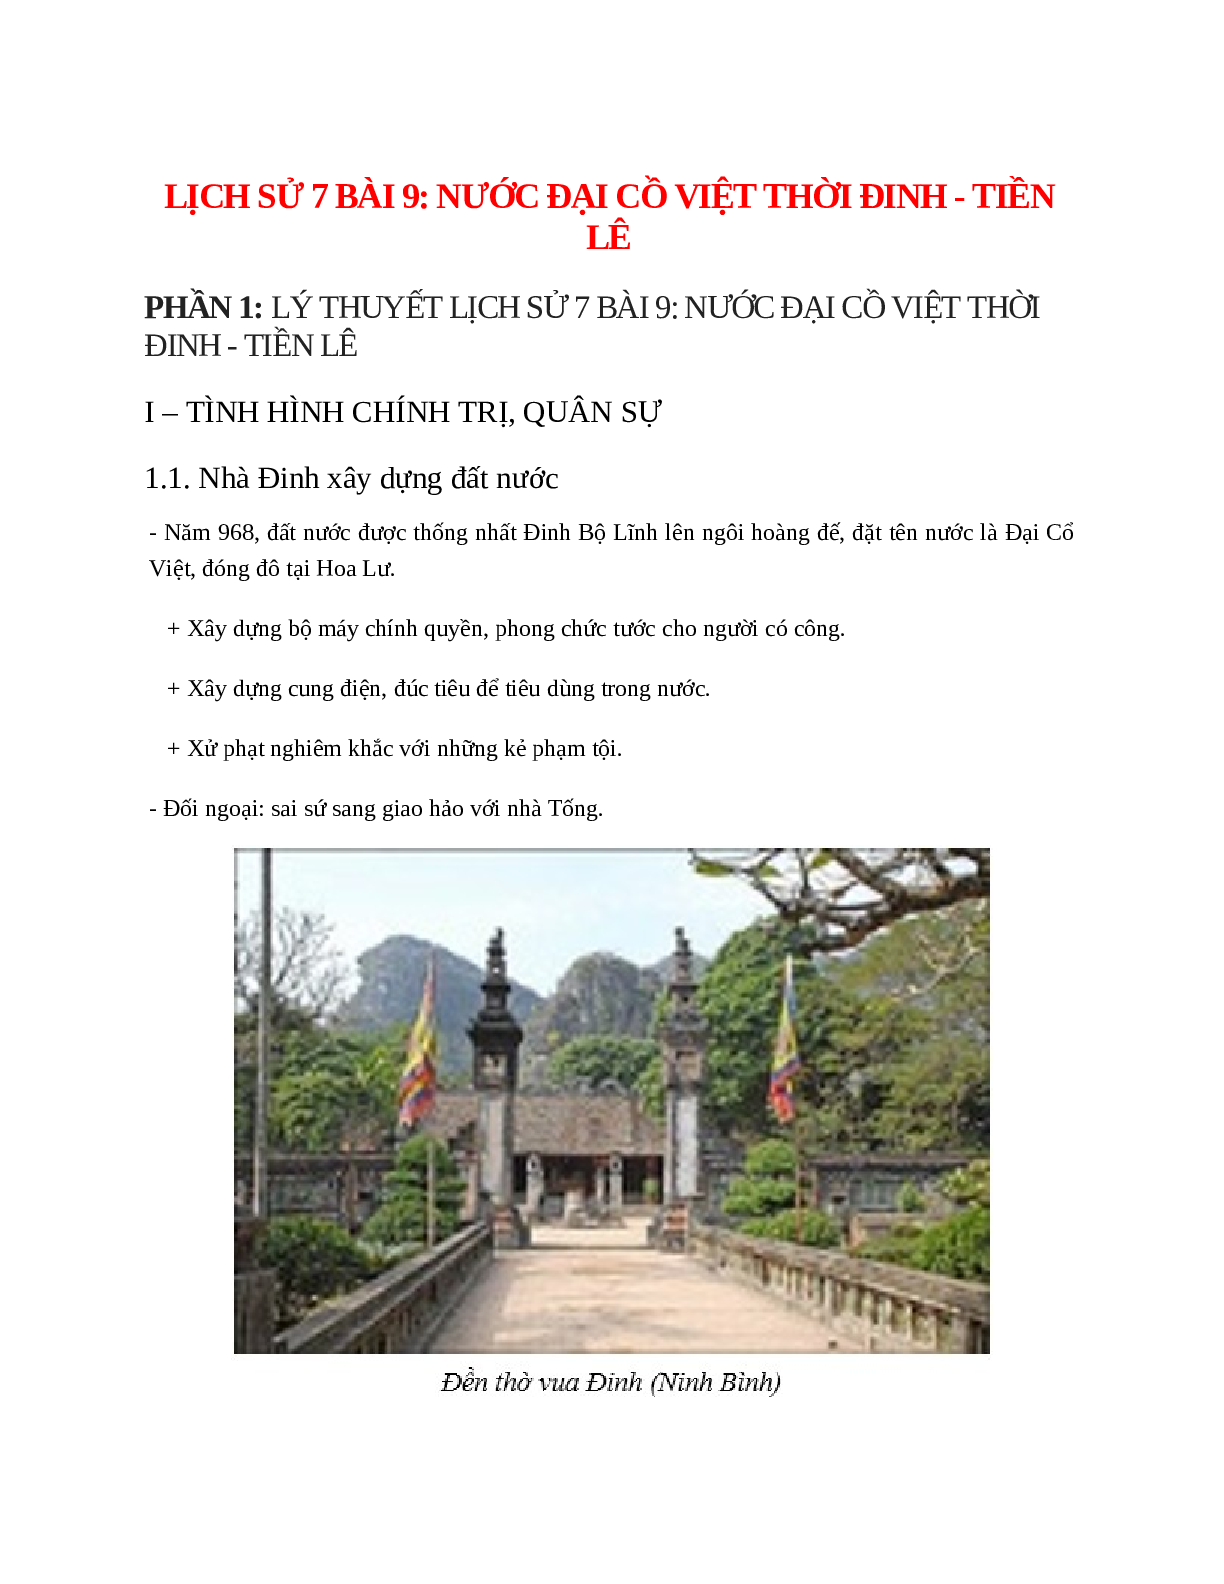 Lịch Sử 7 Bài 9: Nước Đại Cồ Việt thời Đinh - Tiền Lê (trang 1)